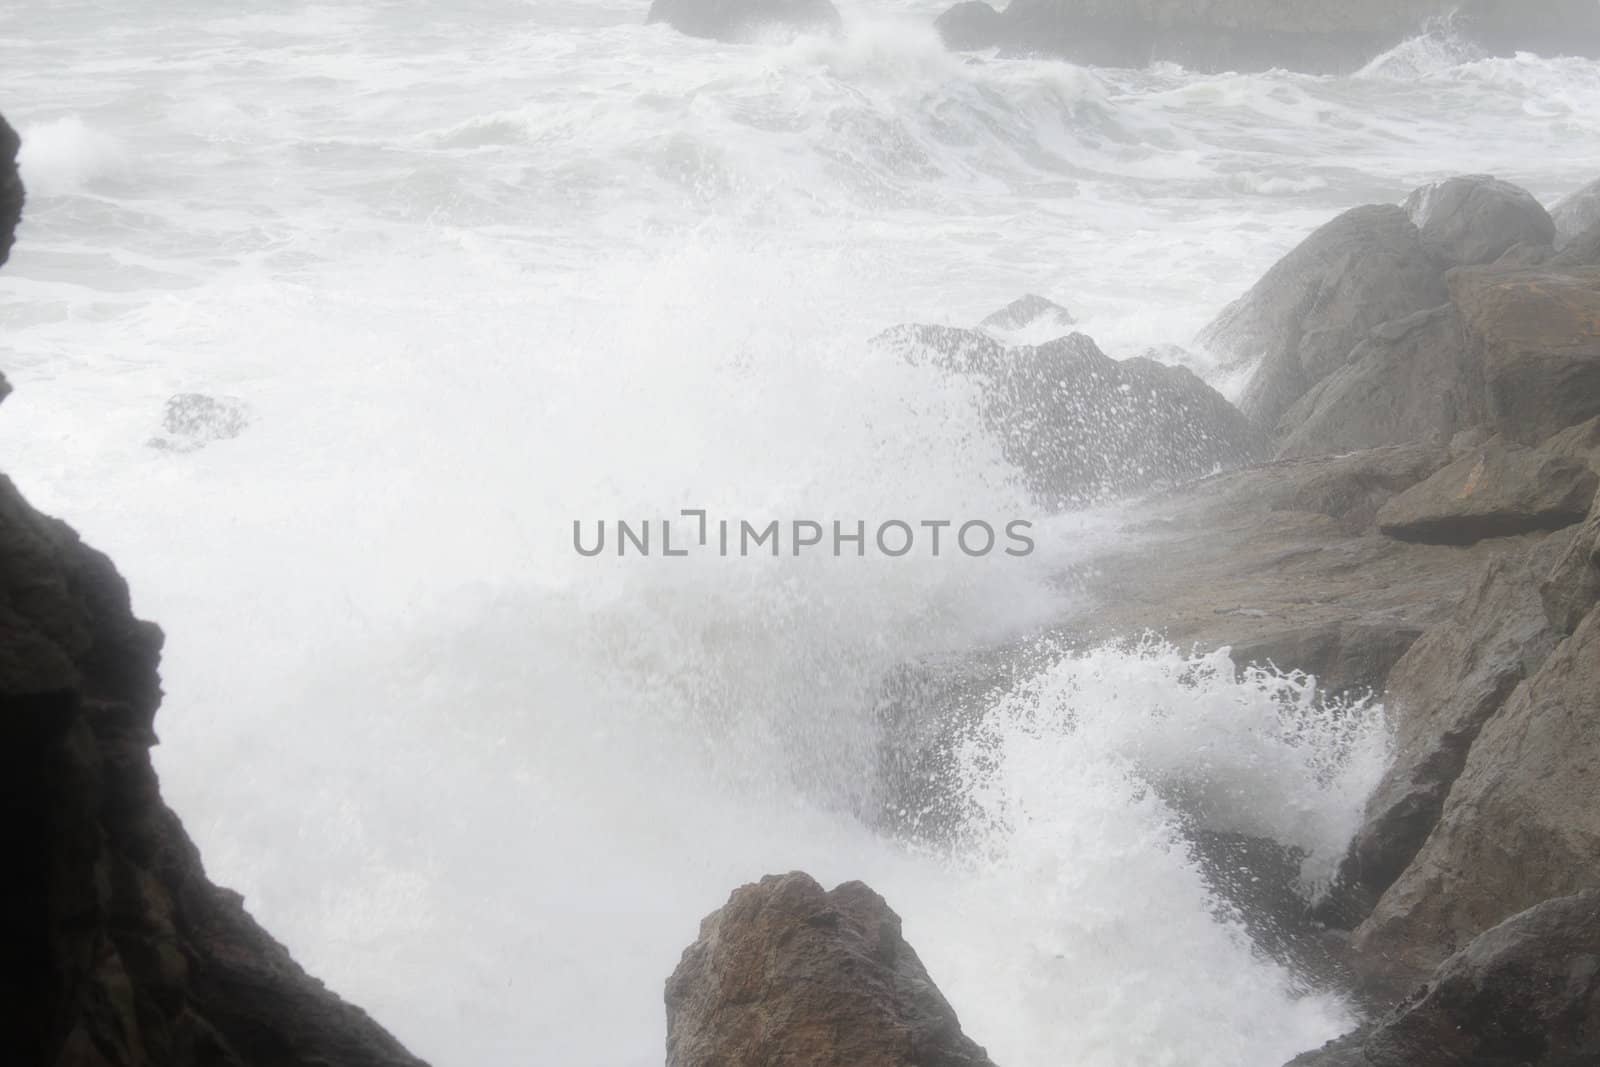 Ocean waves break over rocky coastline by pulen